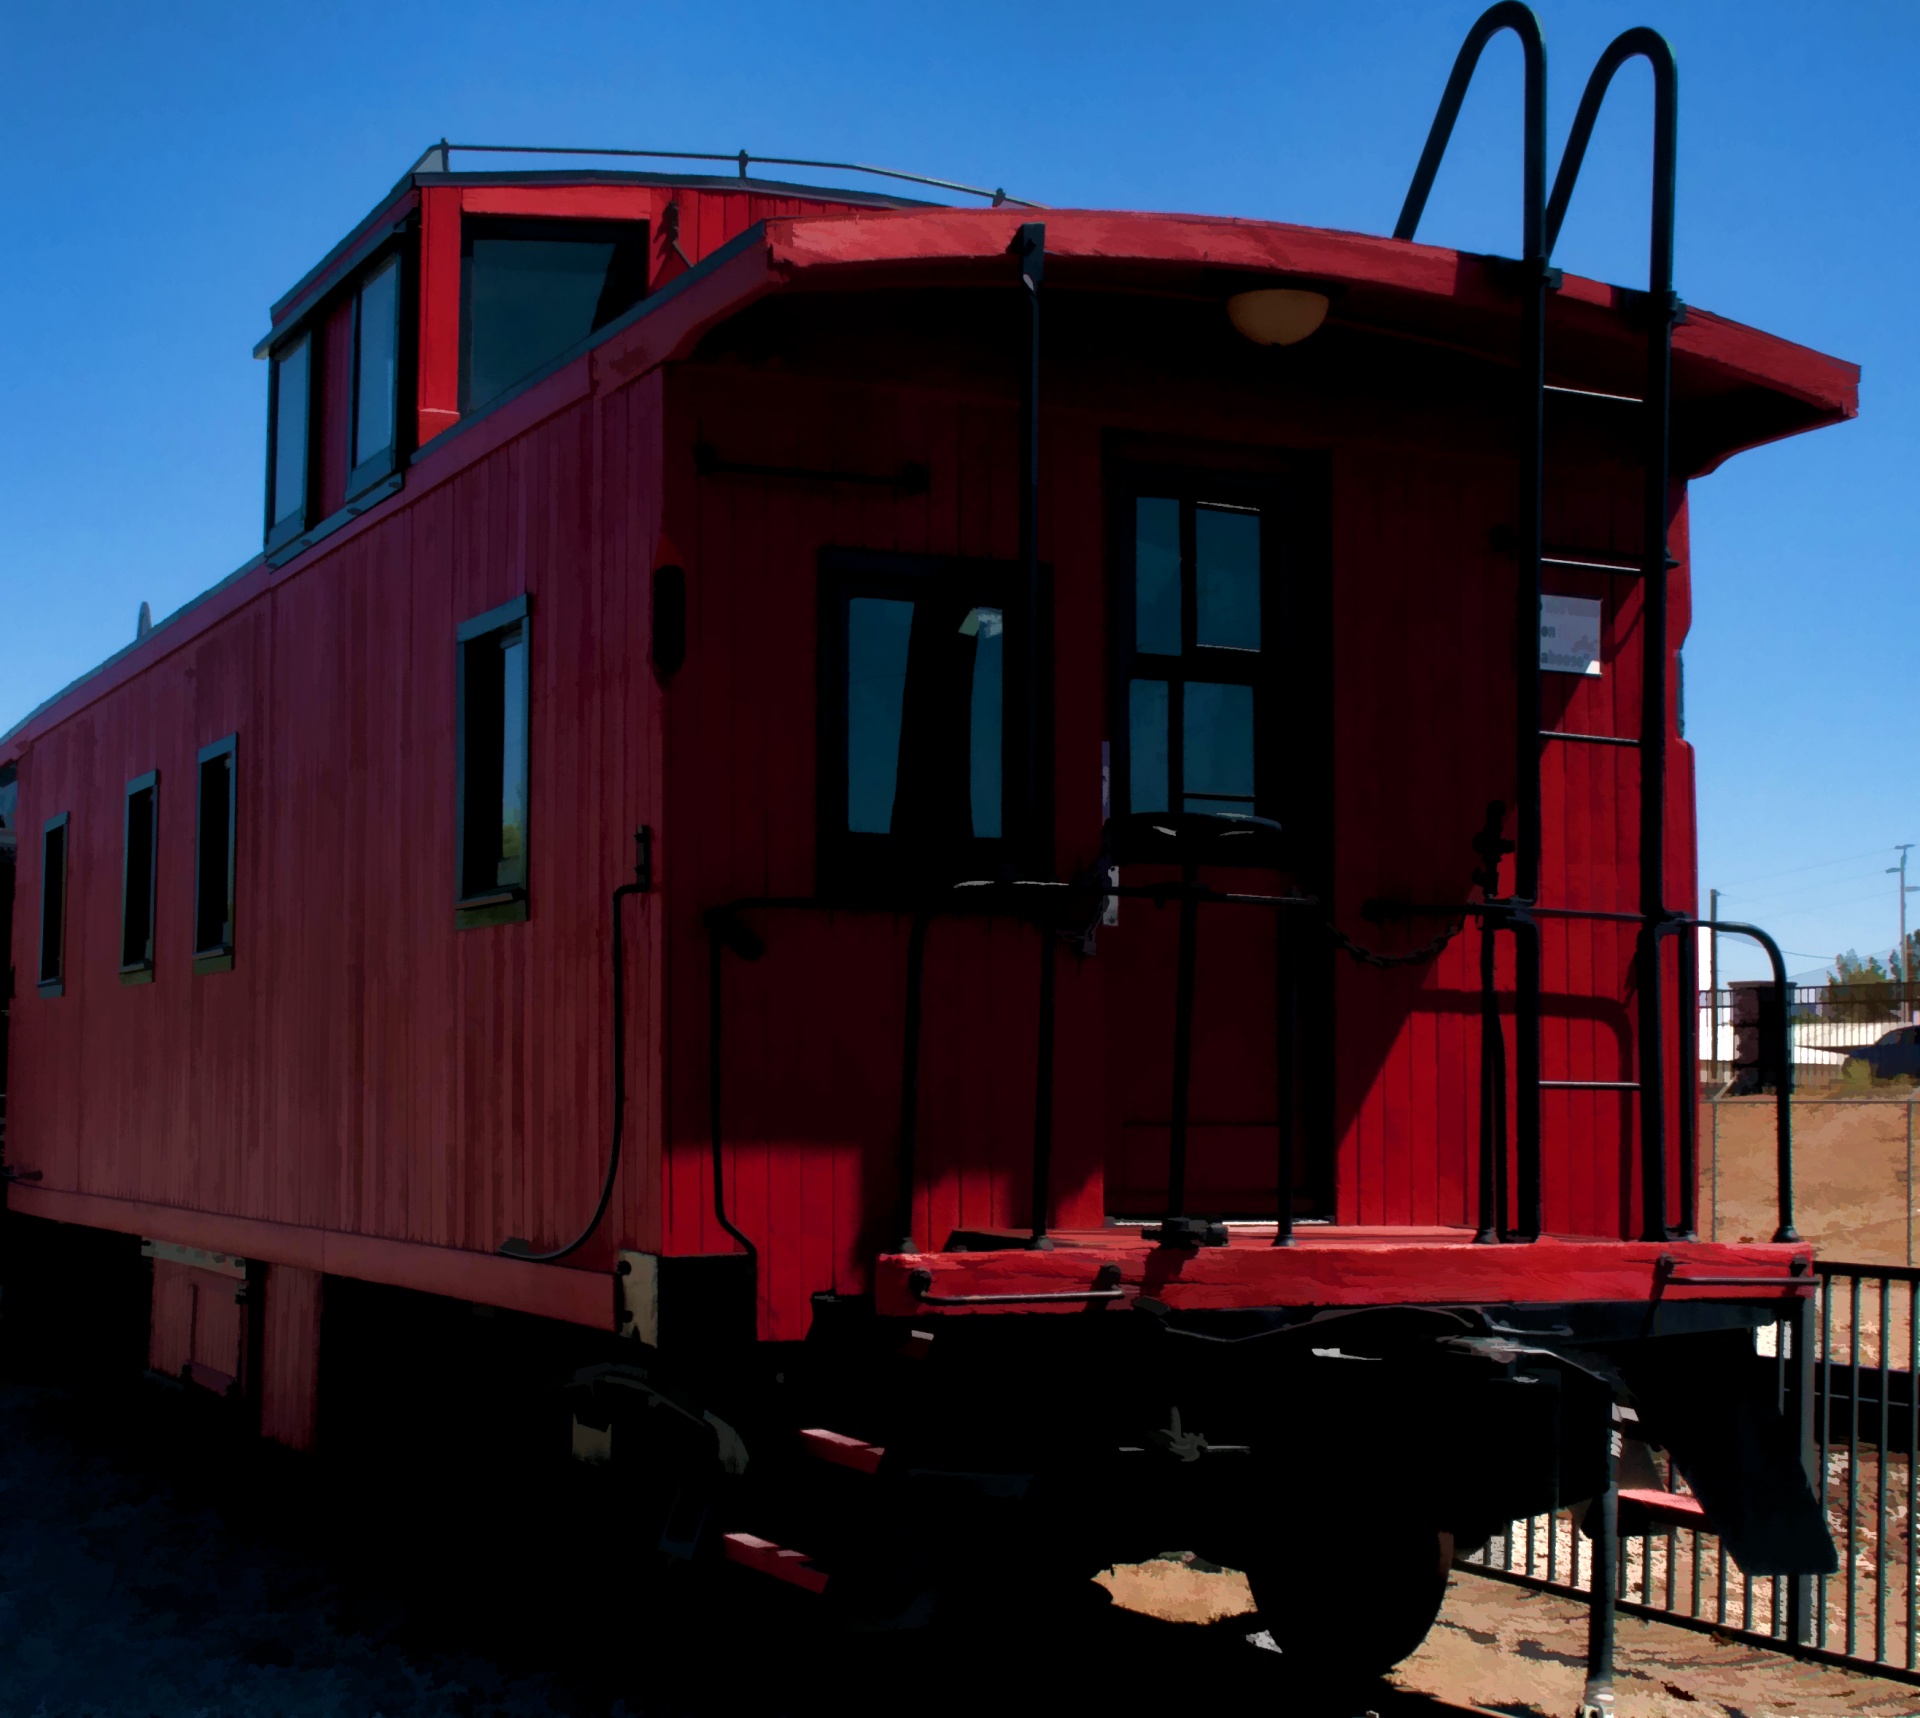 Red Caboose Train Car